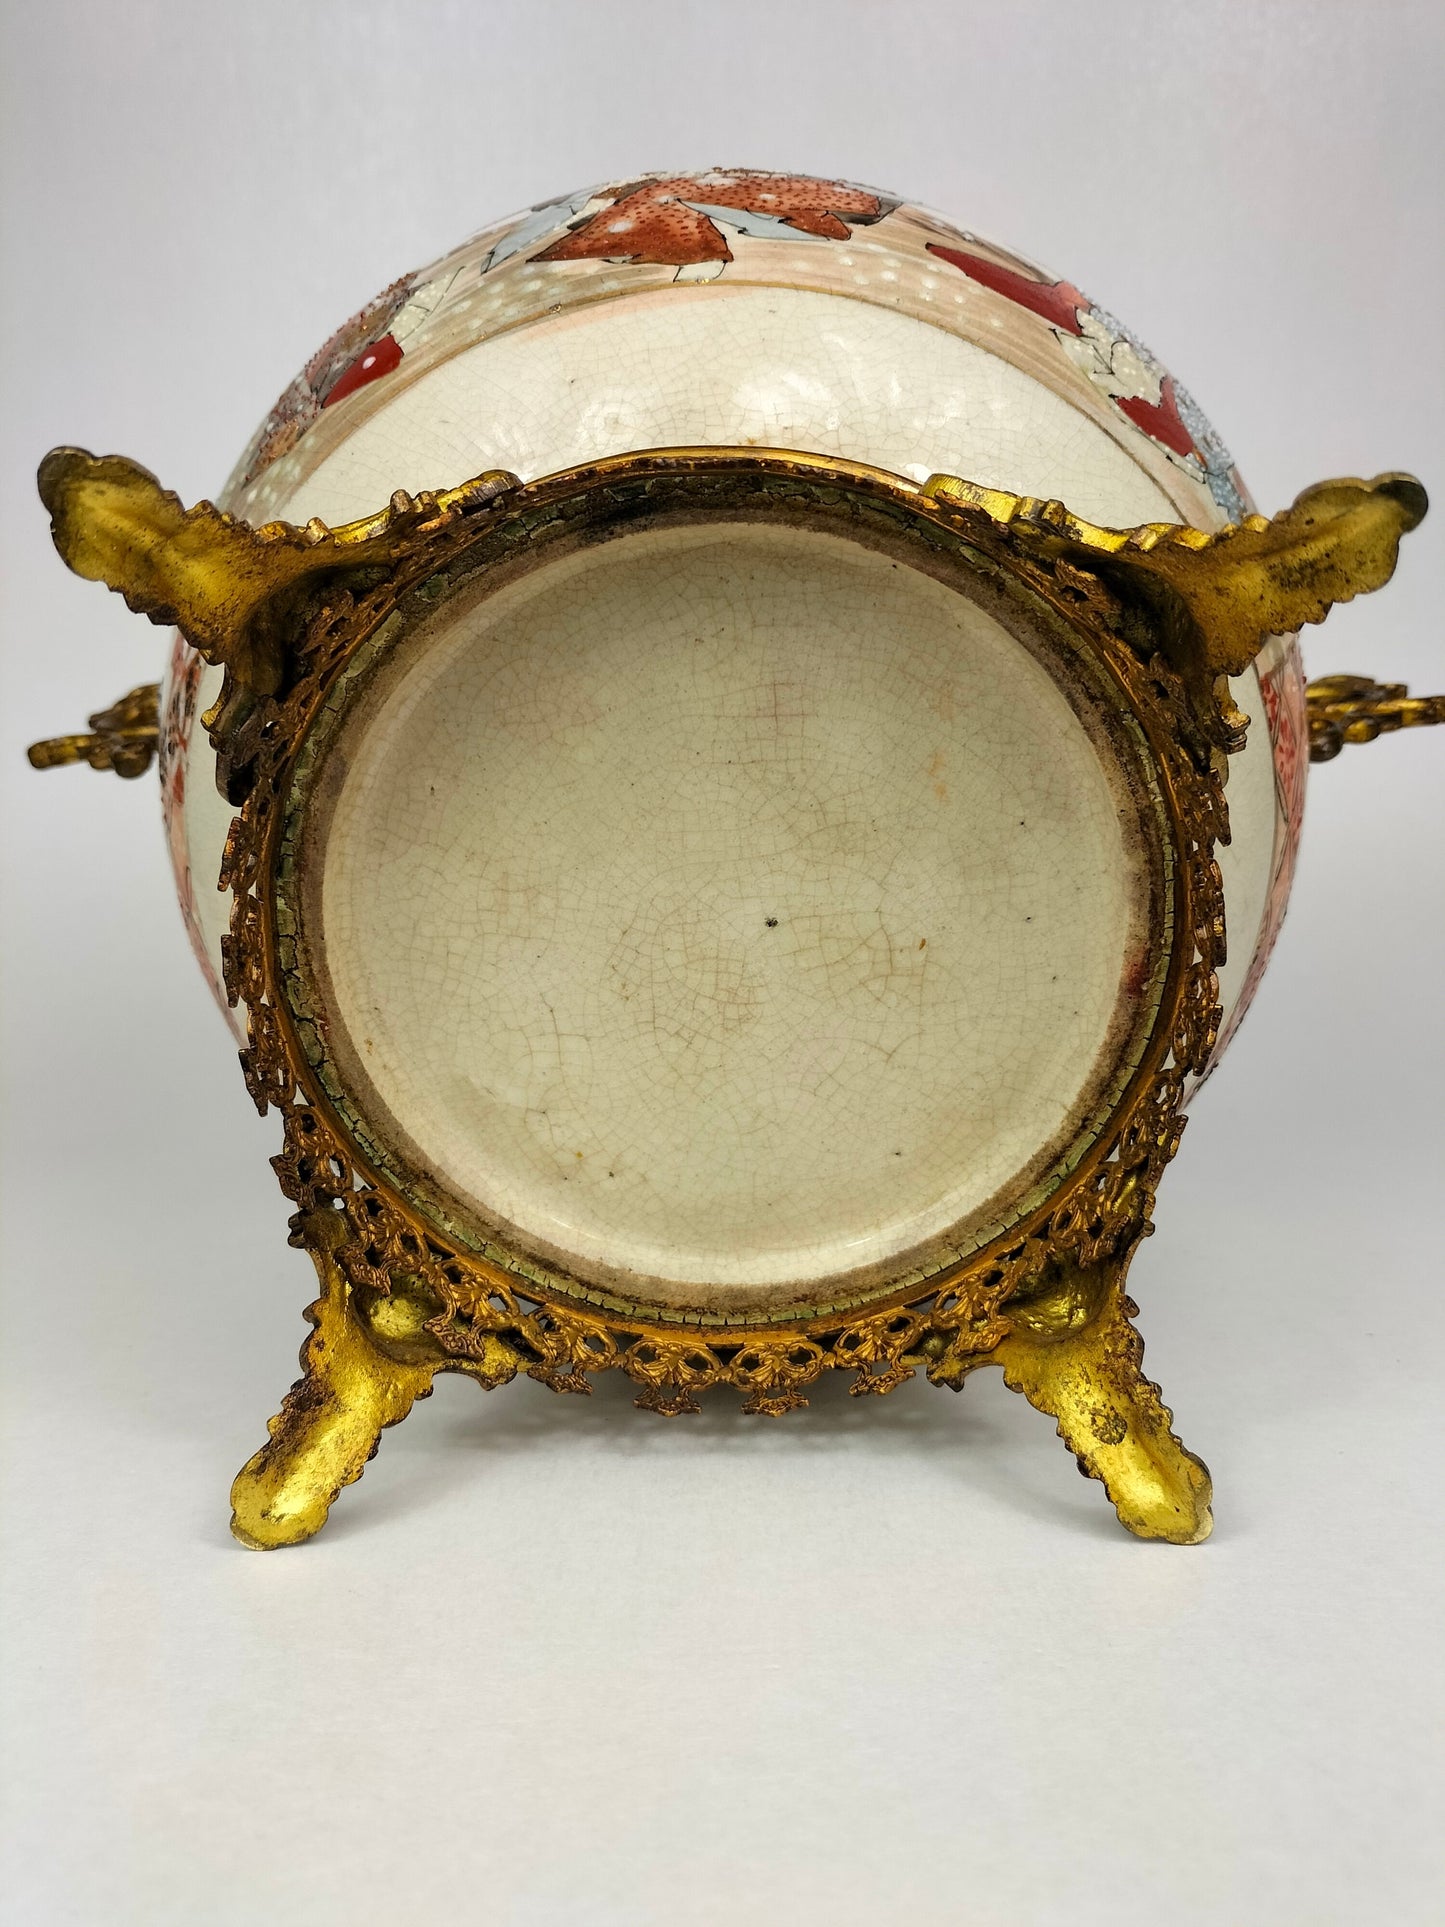 Antigo vaso satsuma japonês montado em latão dourado // Período Meijji - século XIX